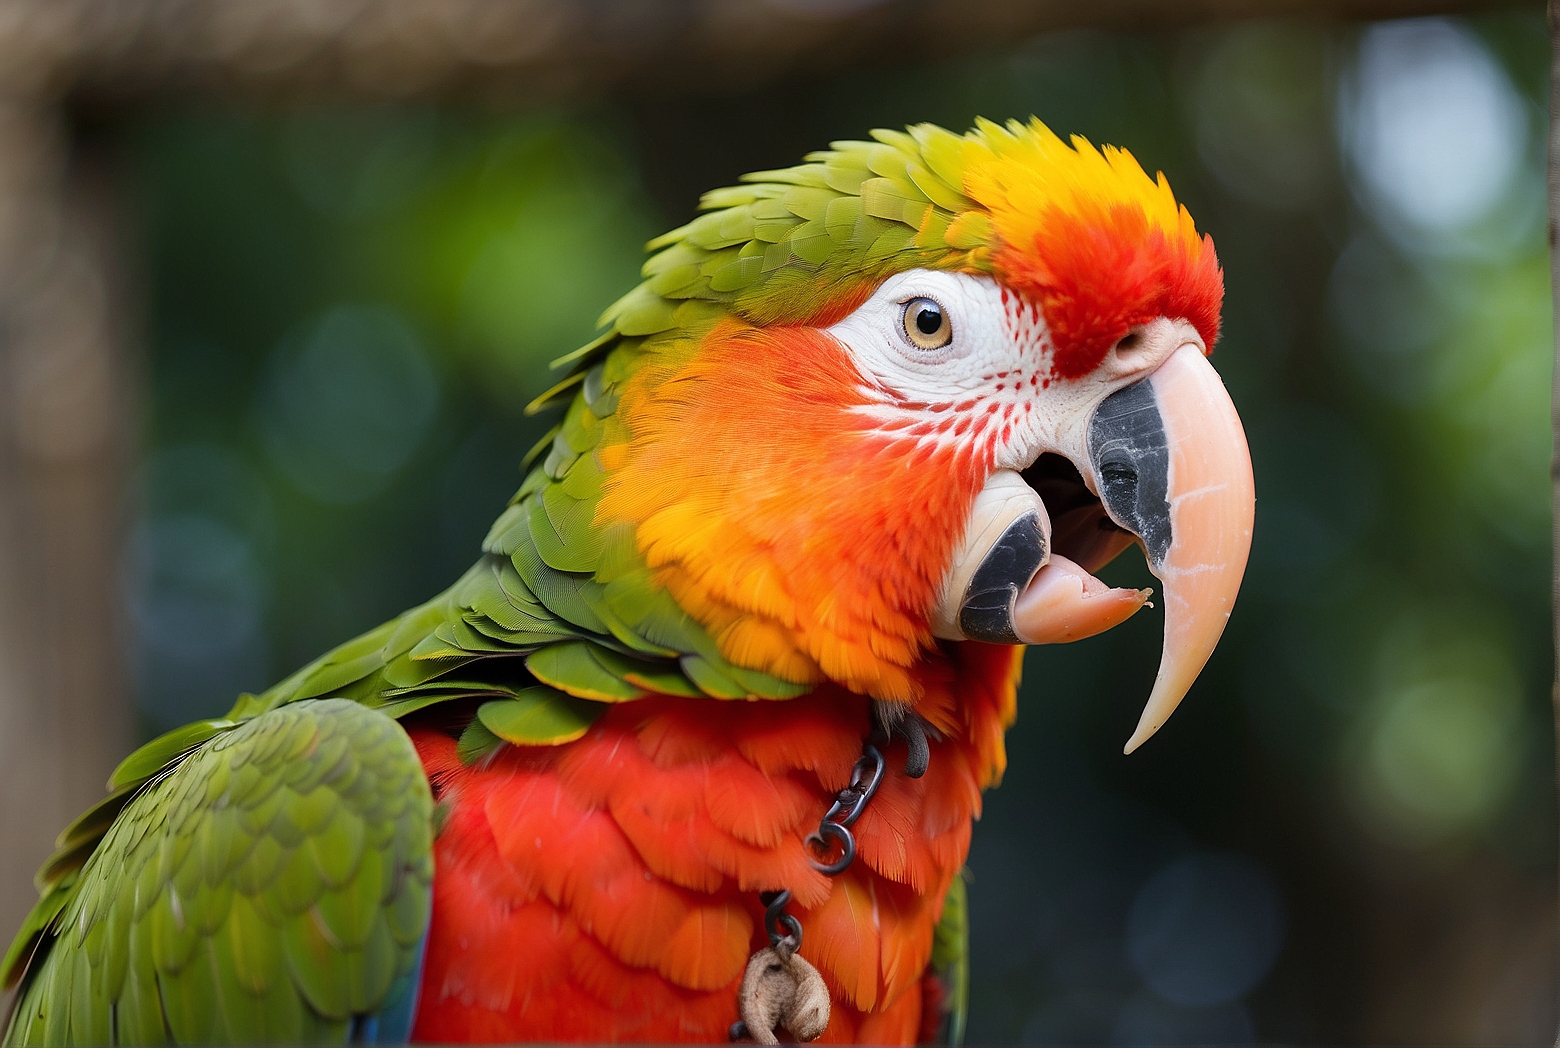 Do Parrots Have Vocal Cords?